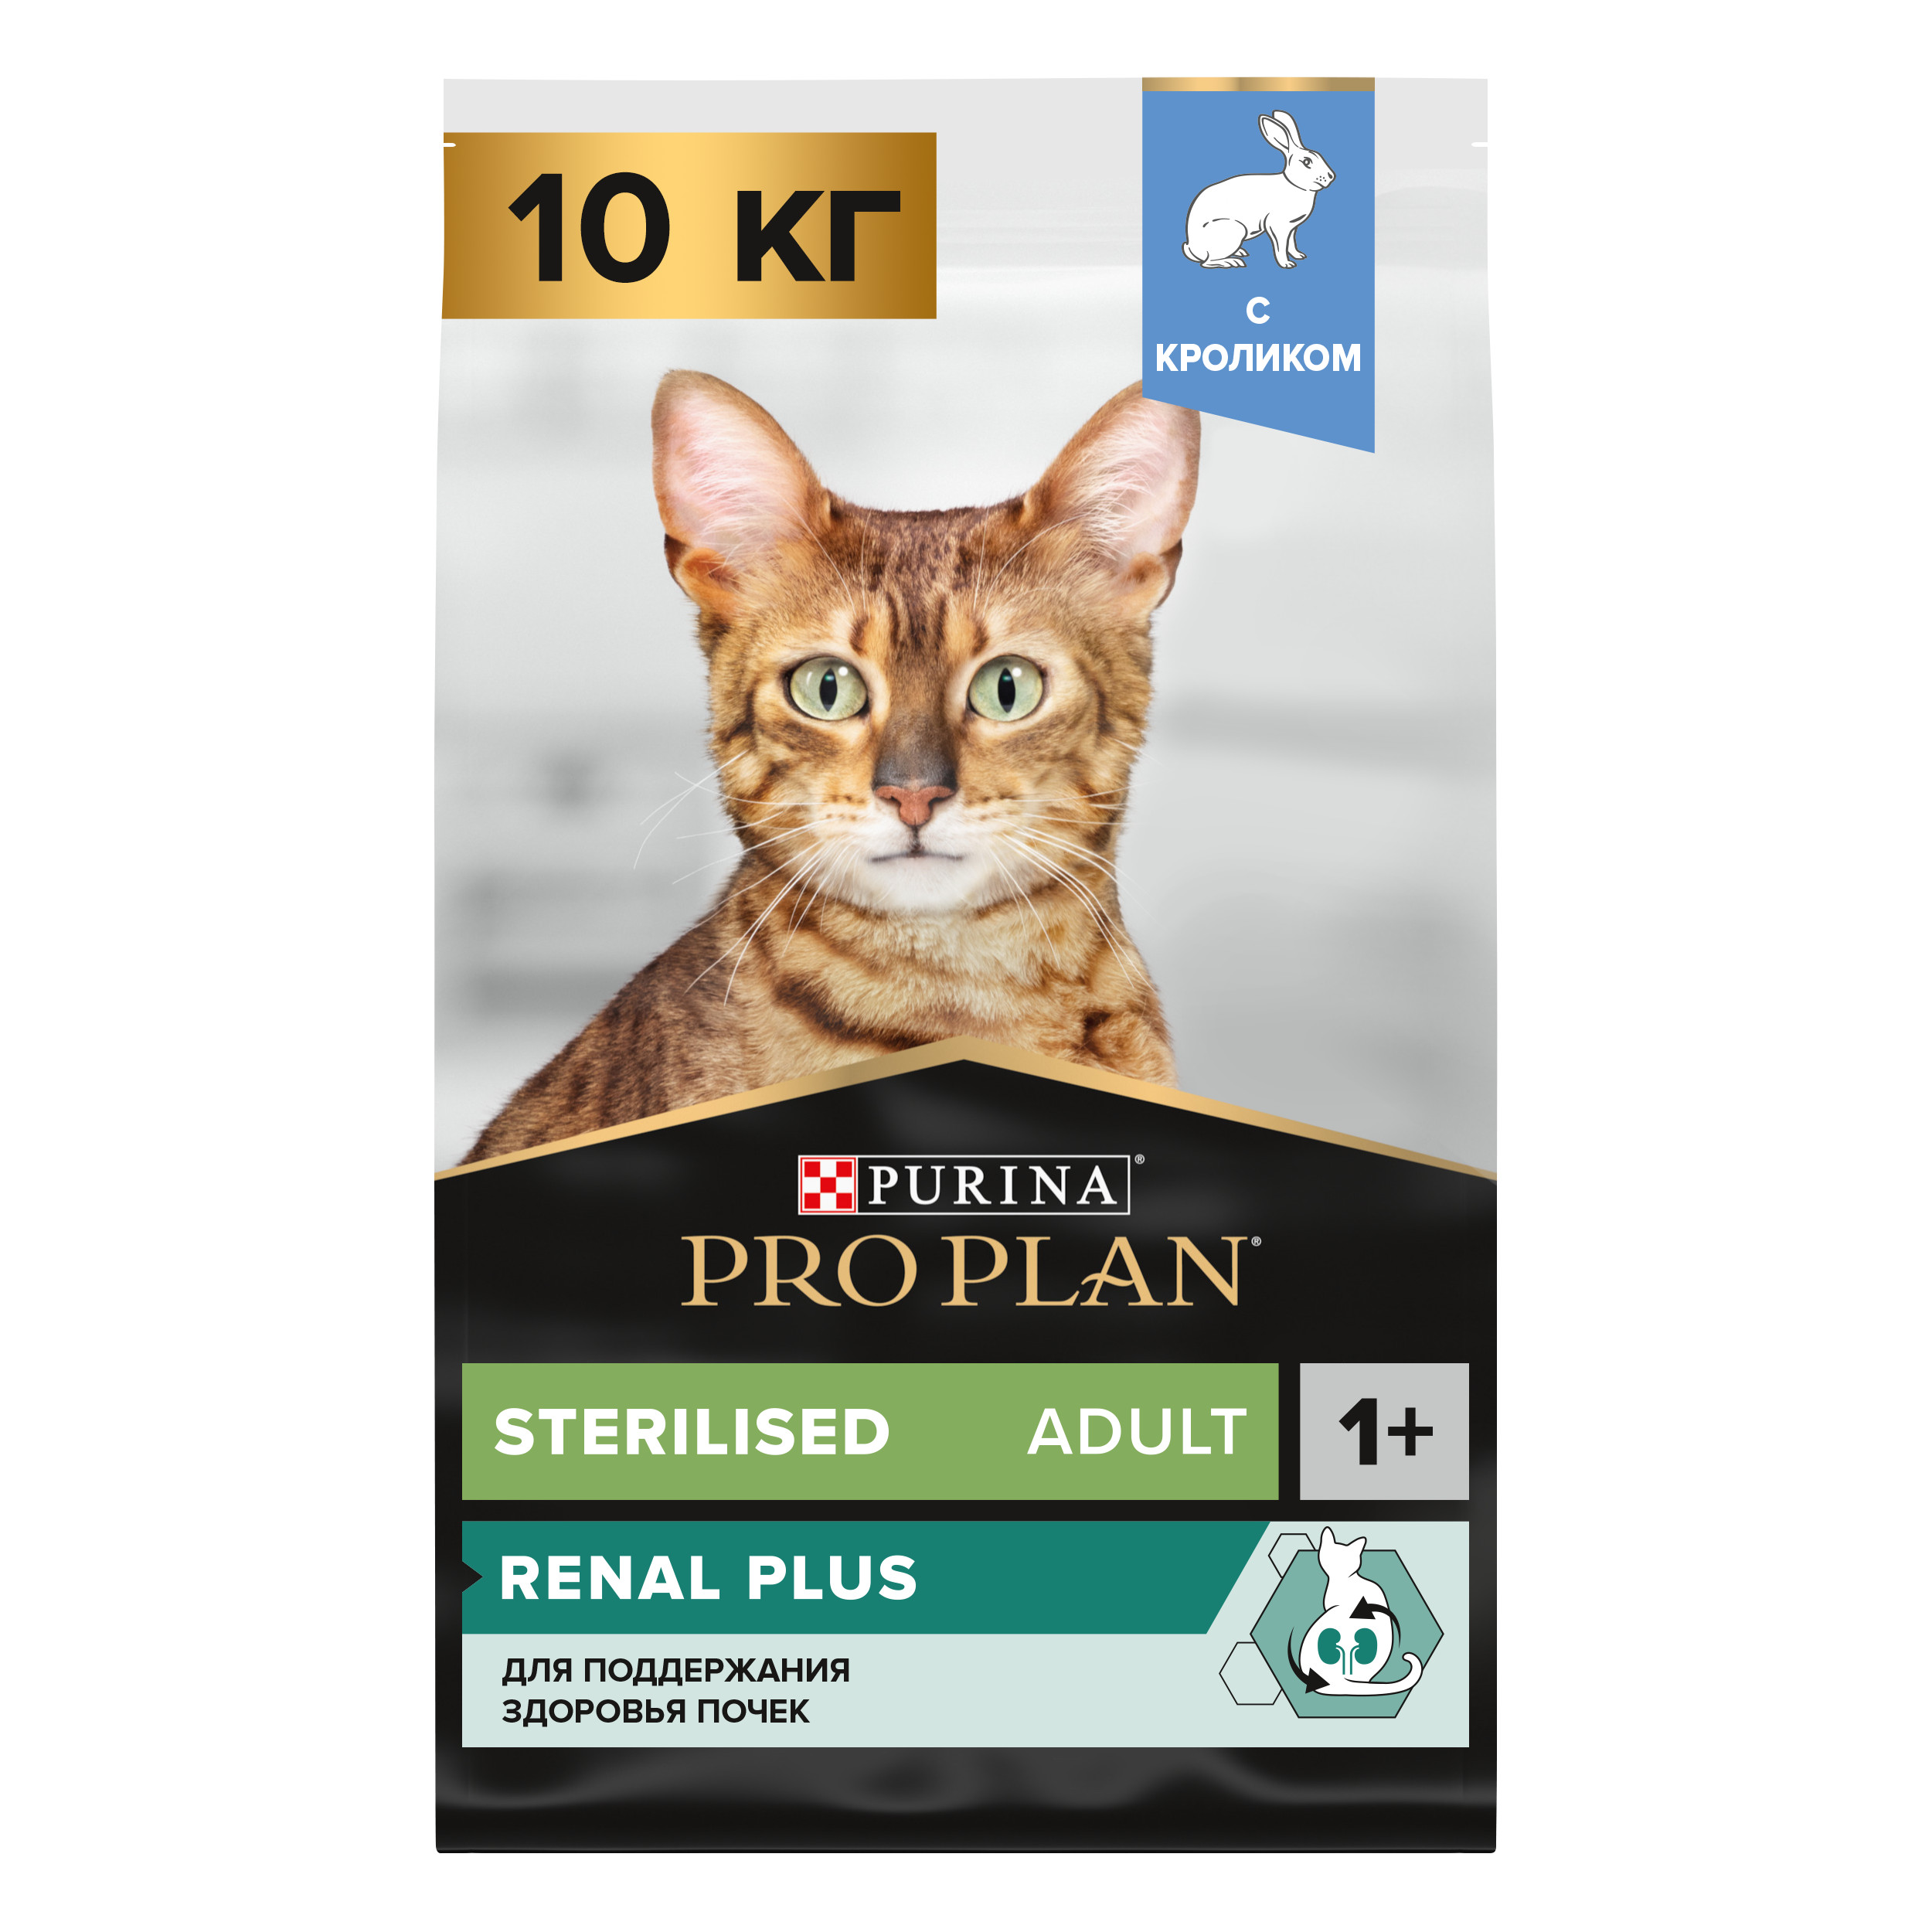 Сухой корм для кошек PRO PLAN для здоровья почек после стерилизации с кроликом, 10 кг